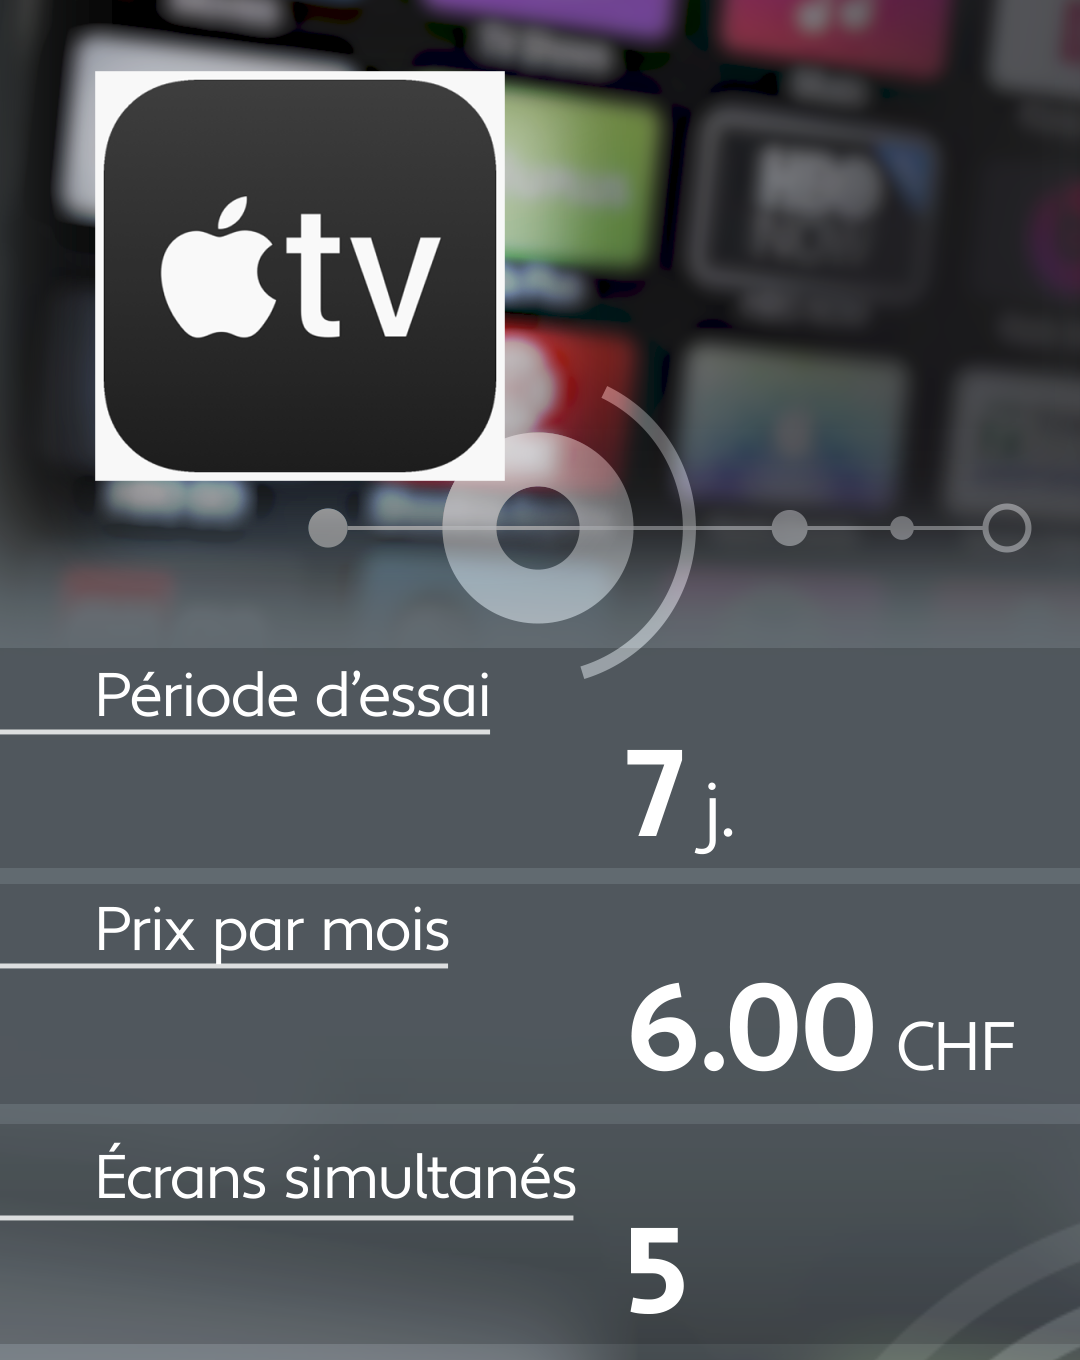 Conditions d'abonnement de quelques plateformes de streaming: Apple TV.